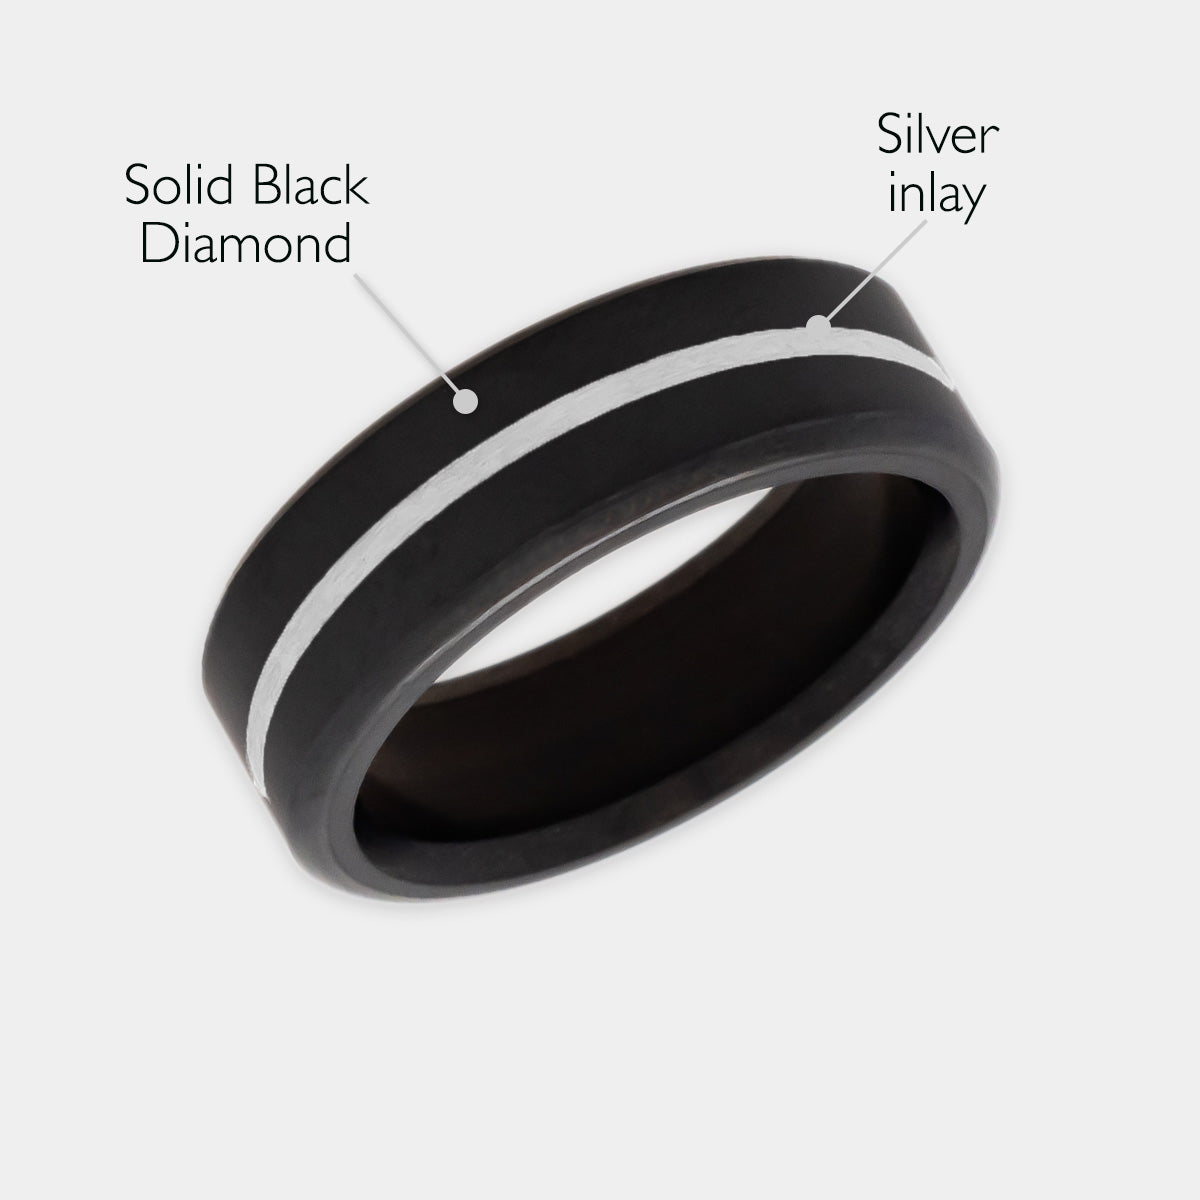 Black Diamond - Men’s Ring 7mm - Silver Inlay - KRATOS - Elysium Black Diamond